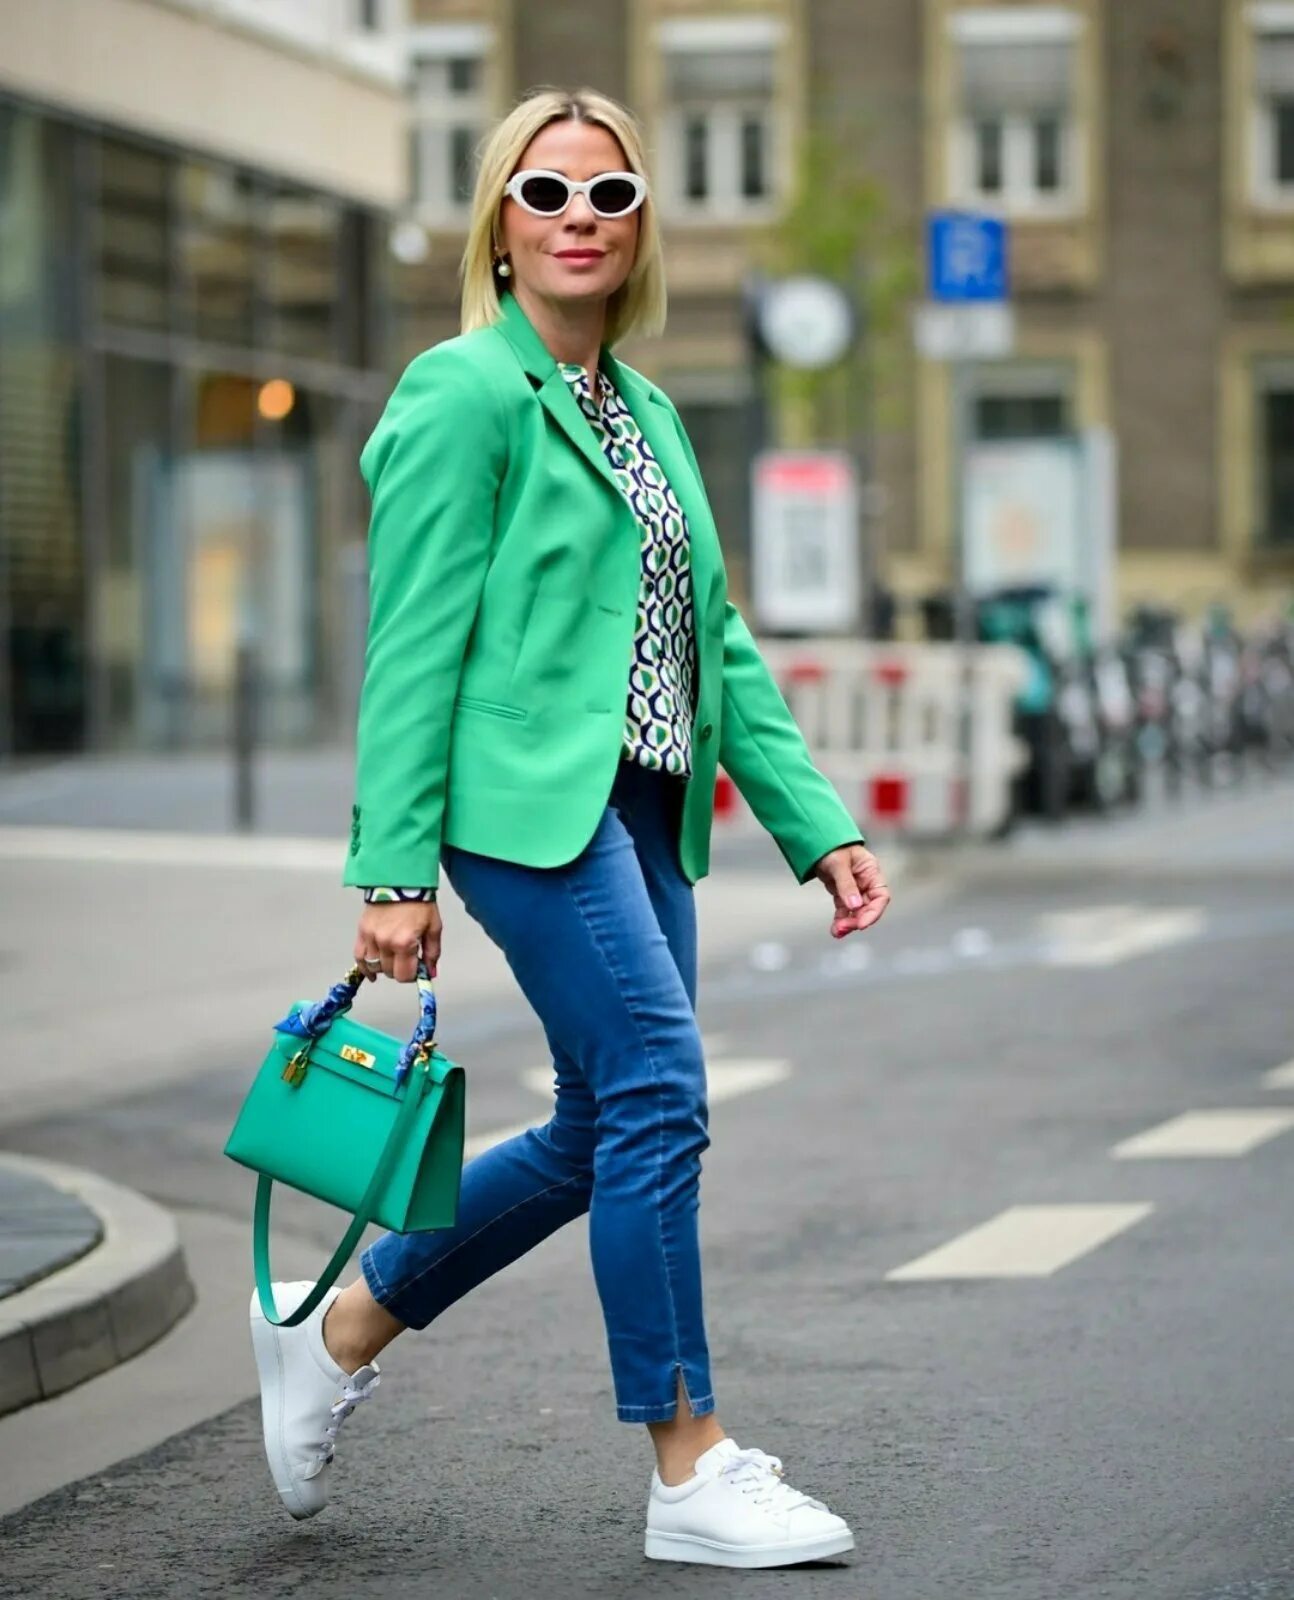 Стиль спорт Шик для женщин. Образы с зеленым пиджаком. Стильные недорогие образы. Модные образы для женщин 40. Модно стильно недорого